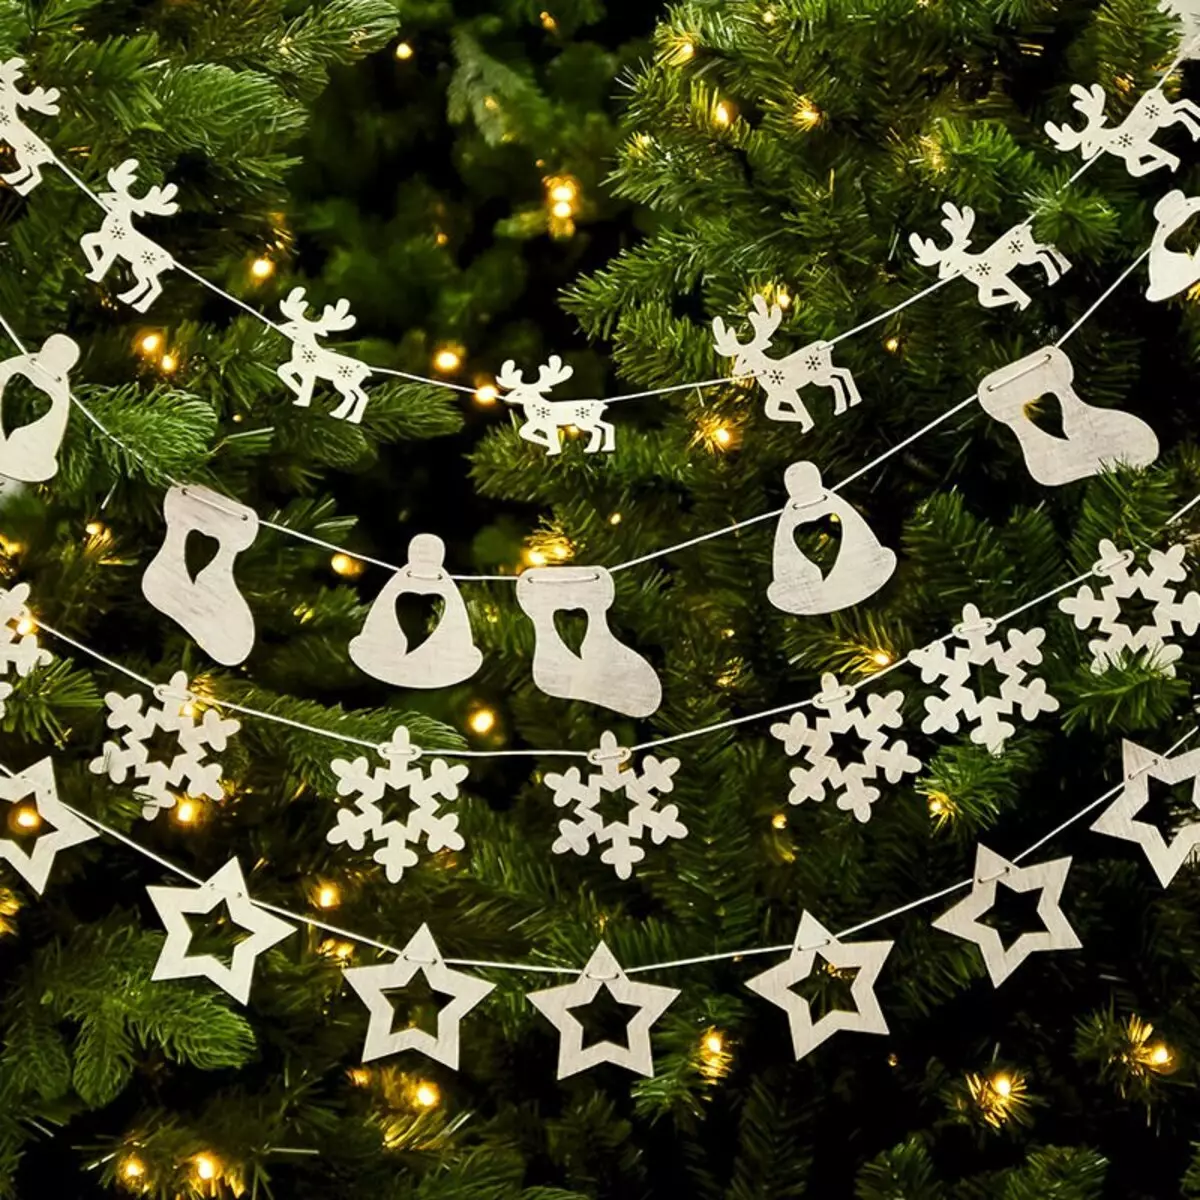 Ako zdobí vianočný strom s vencom? Ako správne a krásne obliekať to podľa schémy s žiariace elektrickej girlandami a ďalšie veniec? 7630_41